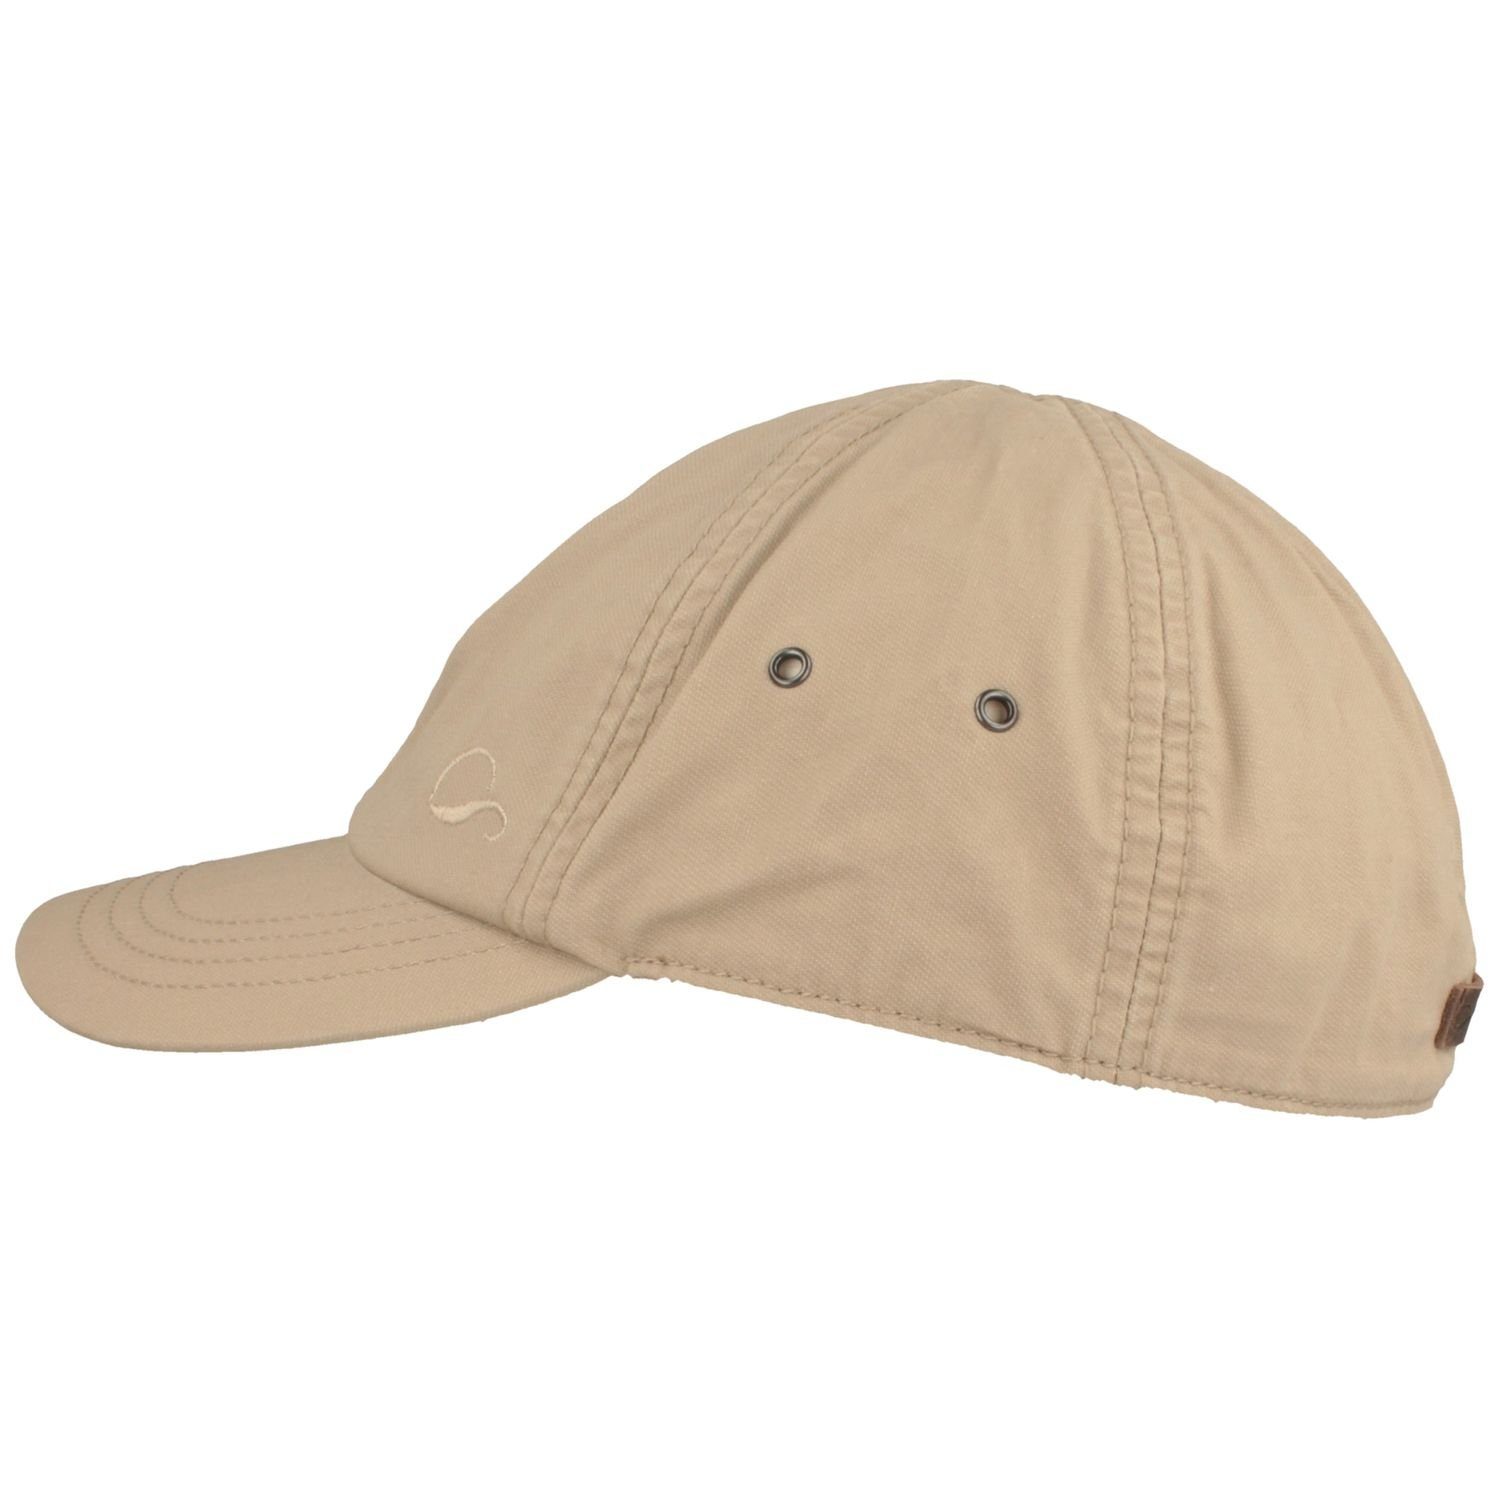 Göttmann Baseball Cap mit UV-Schutz 40+ beige aus Baumwolle 10